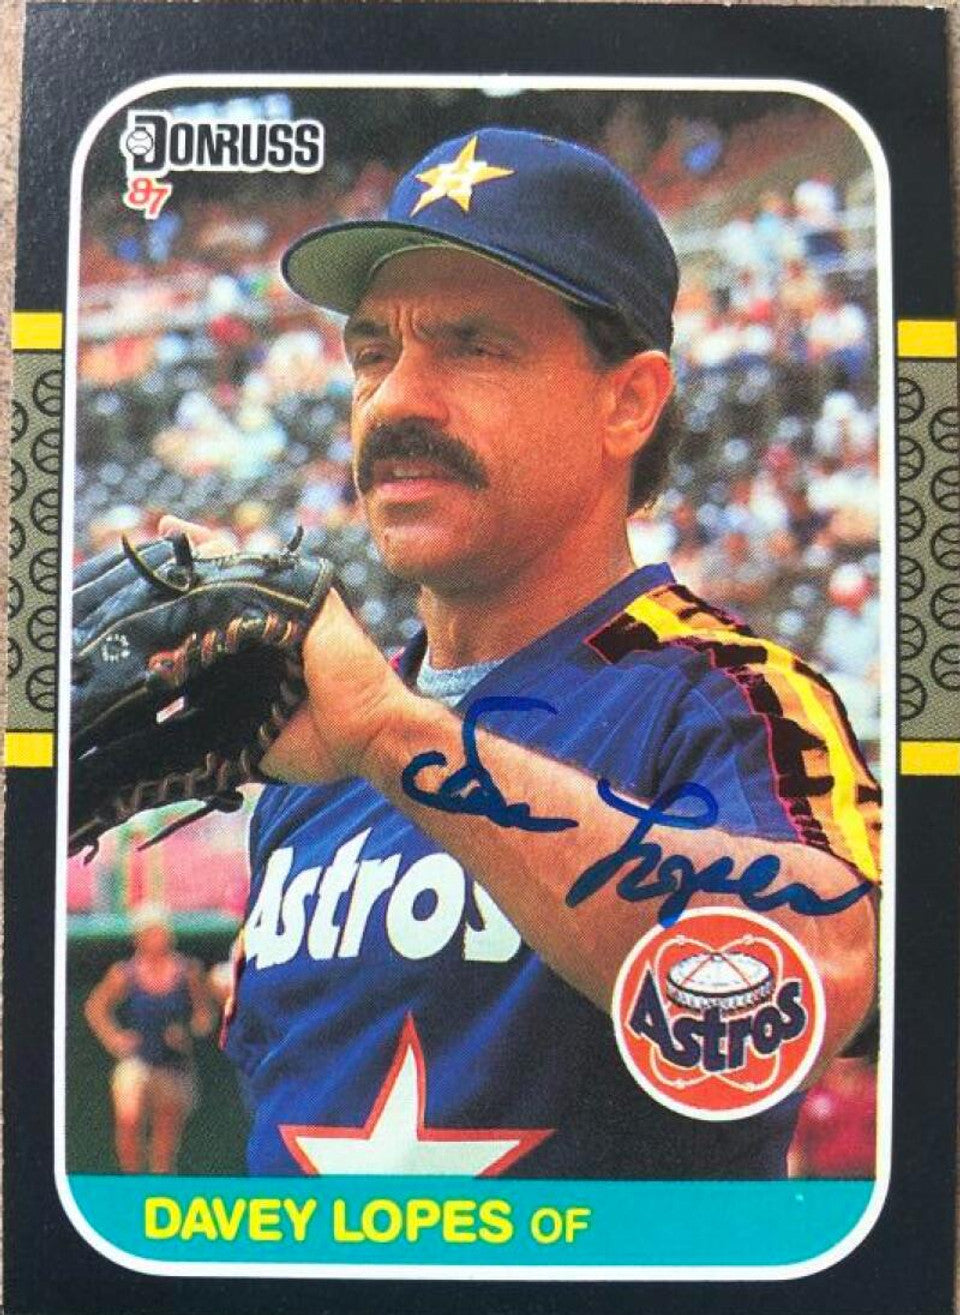 デイビー ロペス サイン入り 1987 ドンラス ベースボール カード - ヒューストン アストロズ